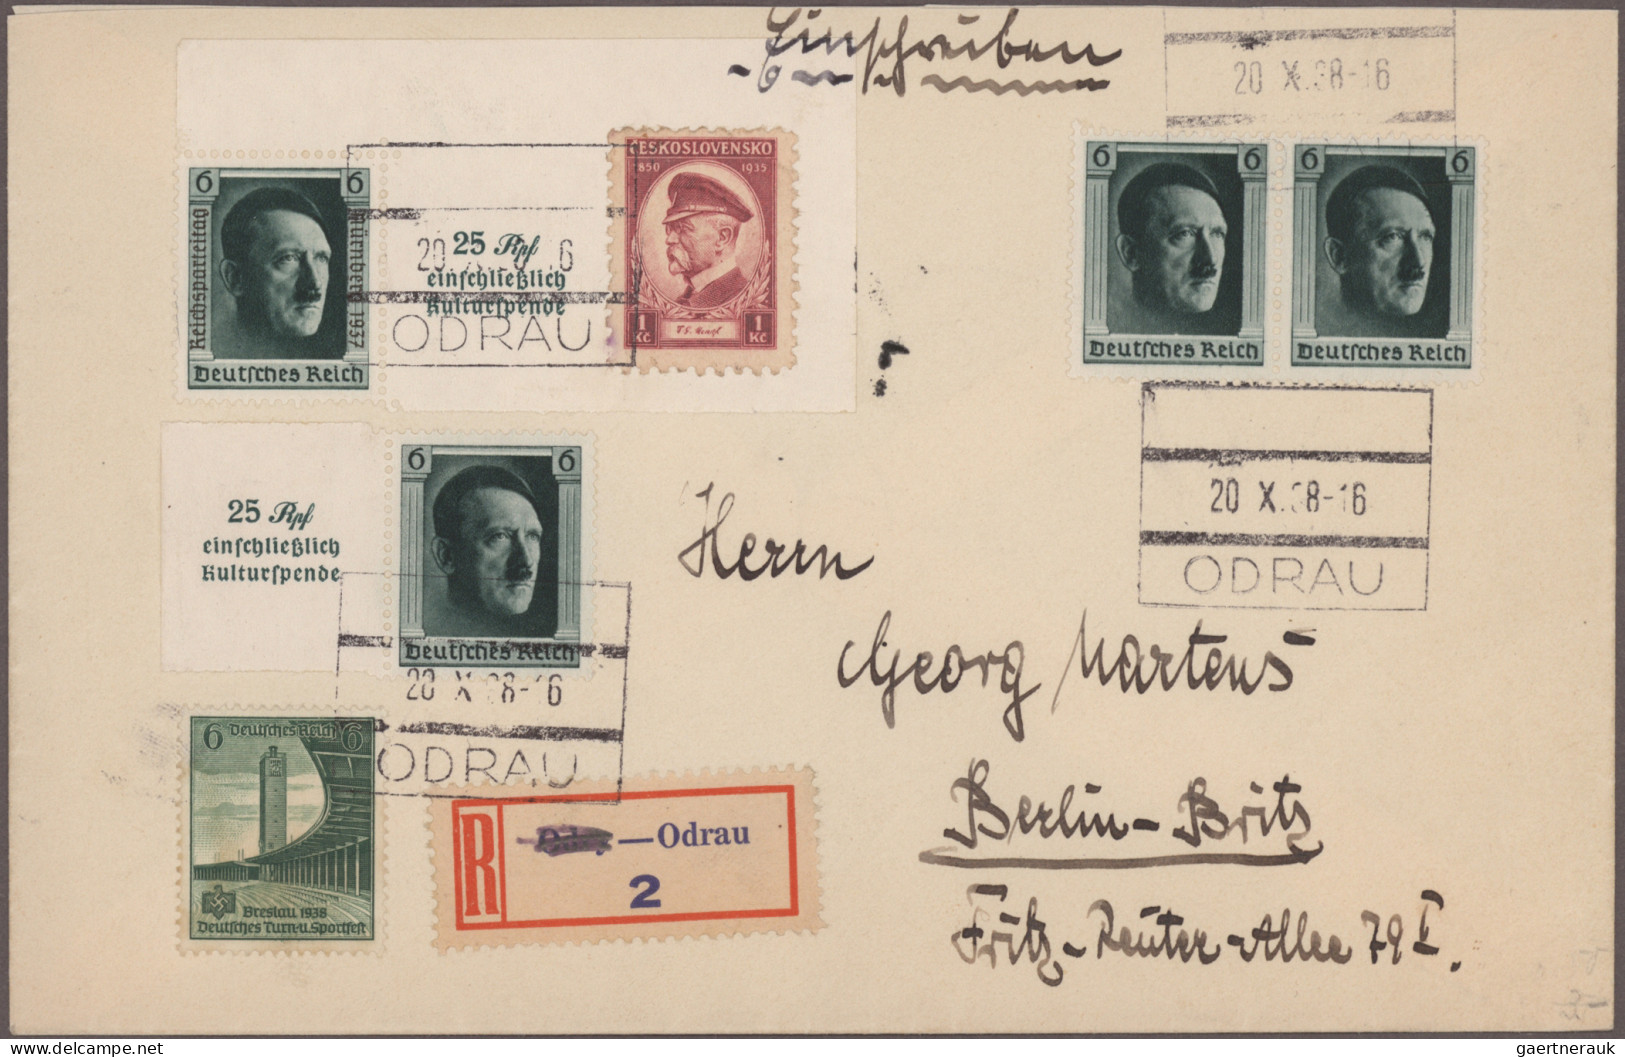 Sudetenland: 1938/1942, umfangreiche Belege-Sammlung mit mehr als 220 Briefen, K